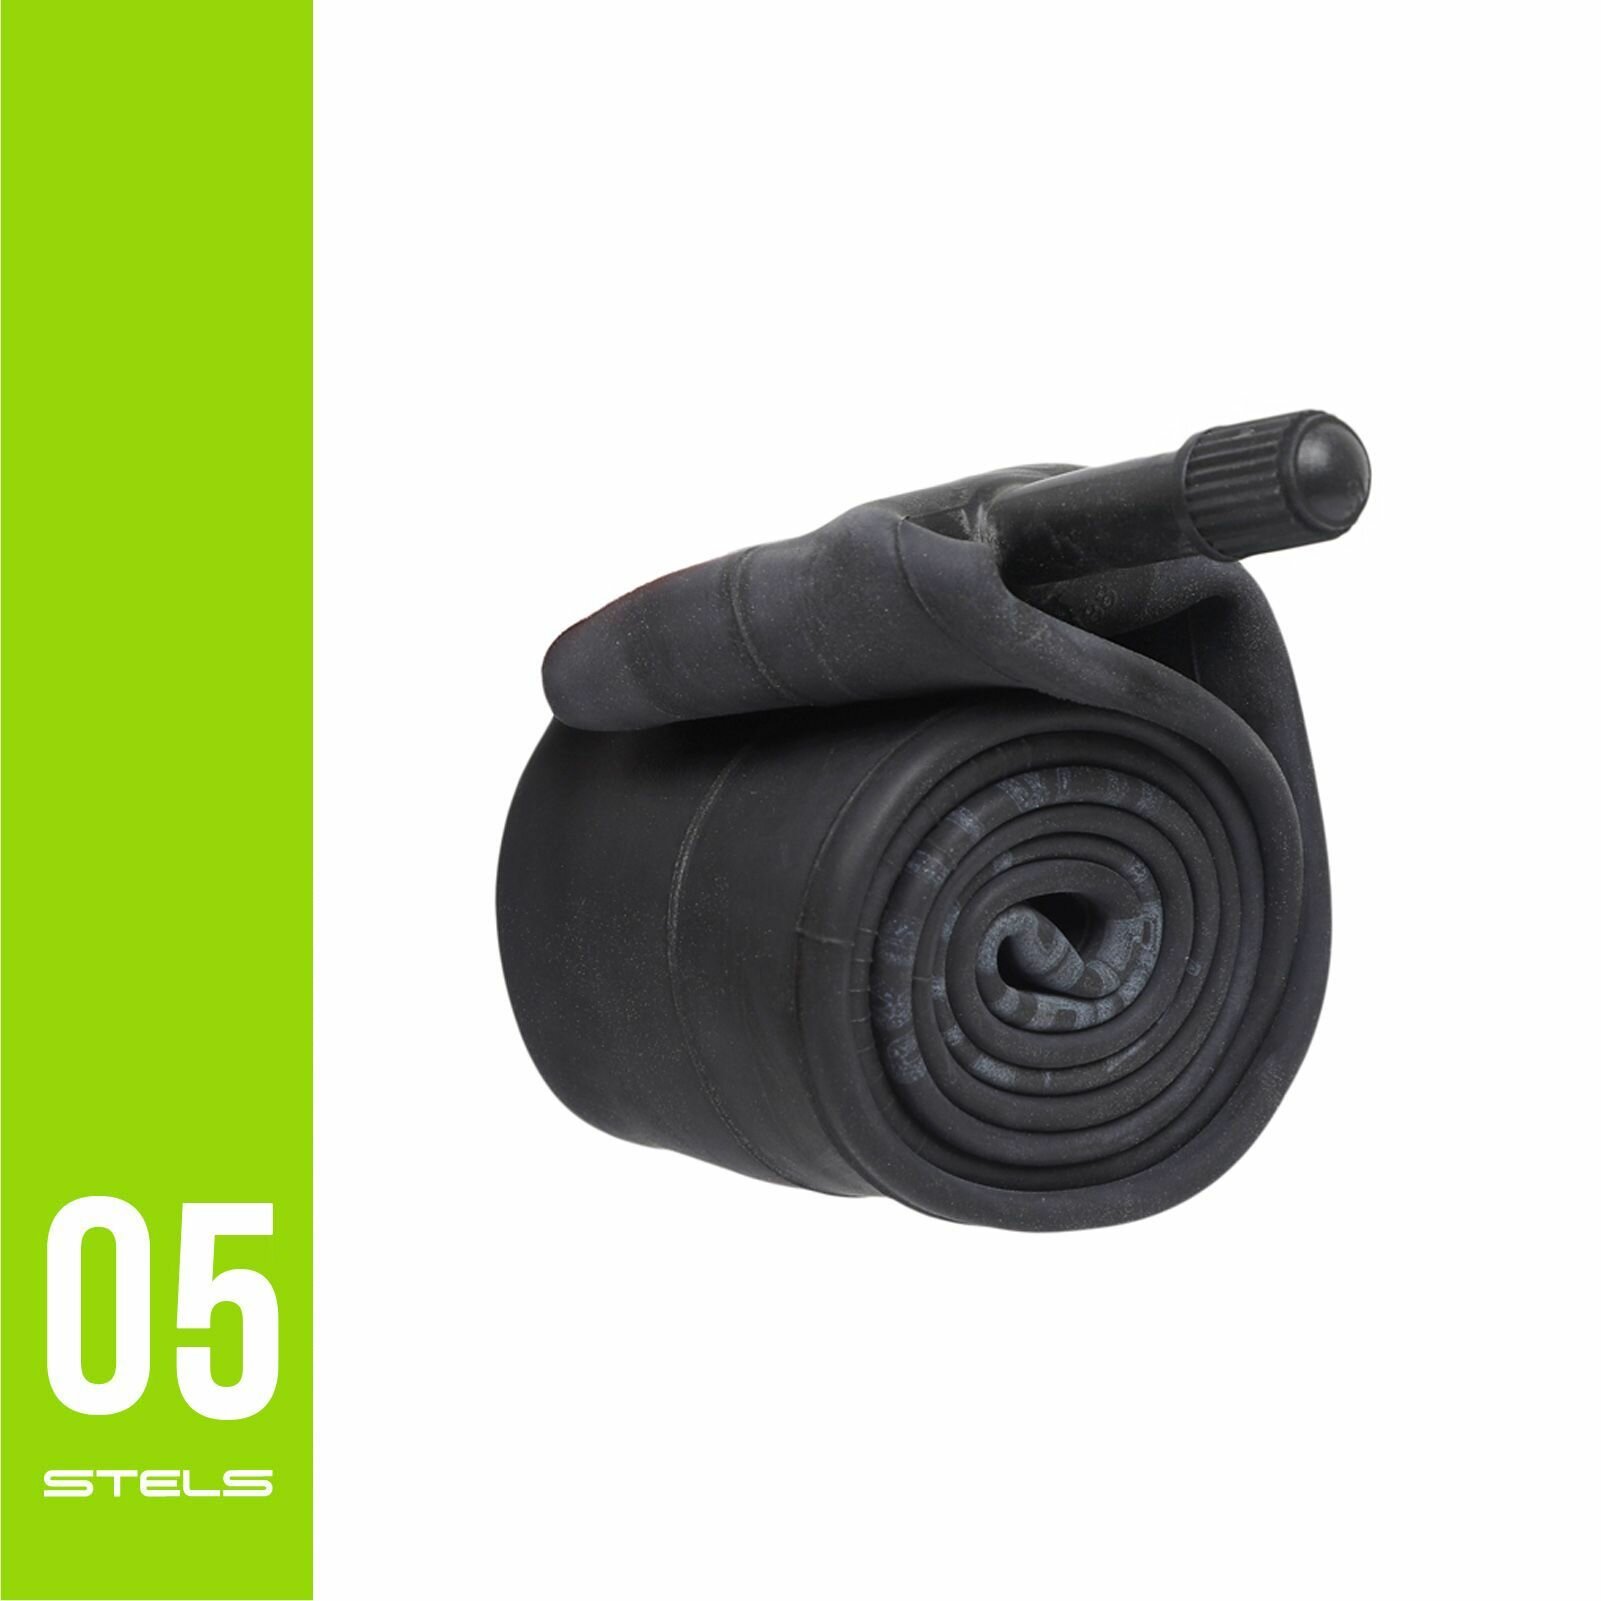 Велокамера STELS/CHAO YANG 12"1/2x2.125" автониппель, в индивидуальной упаковке